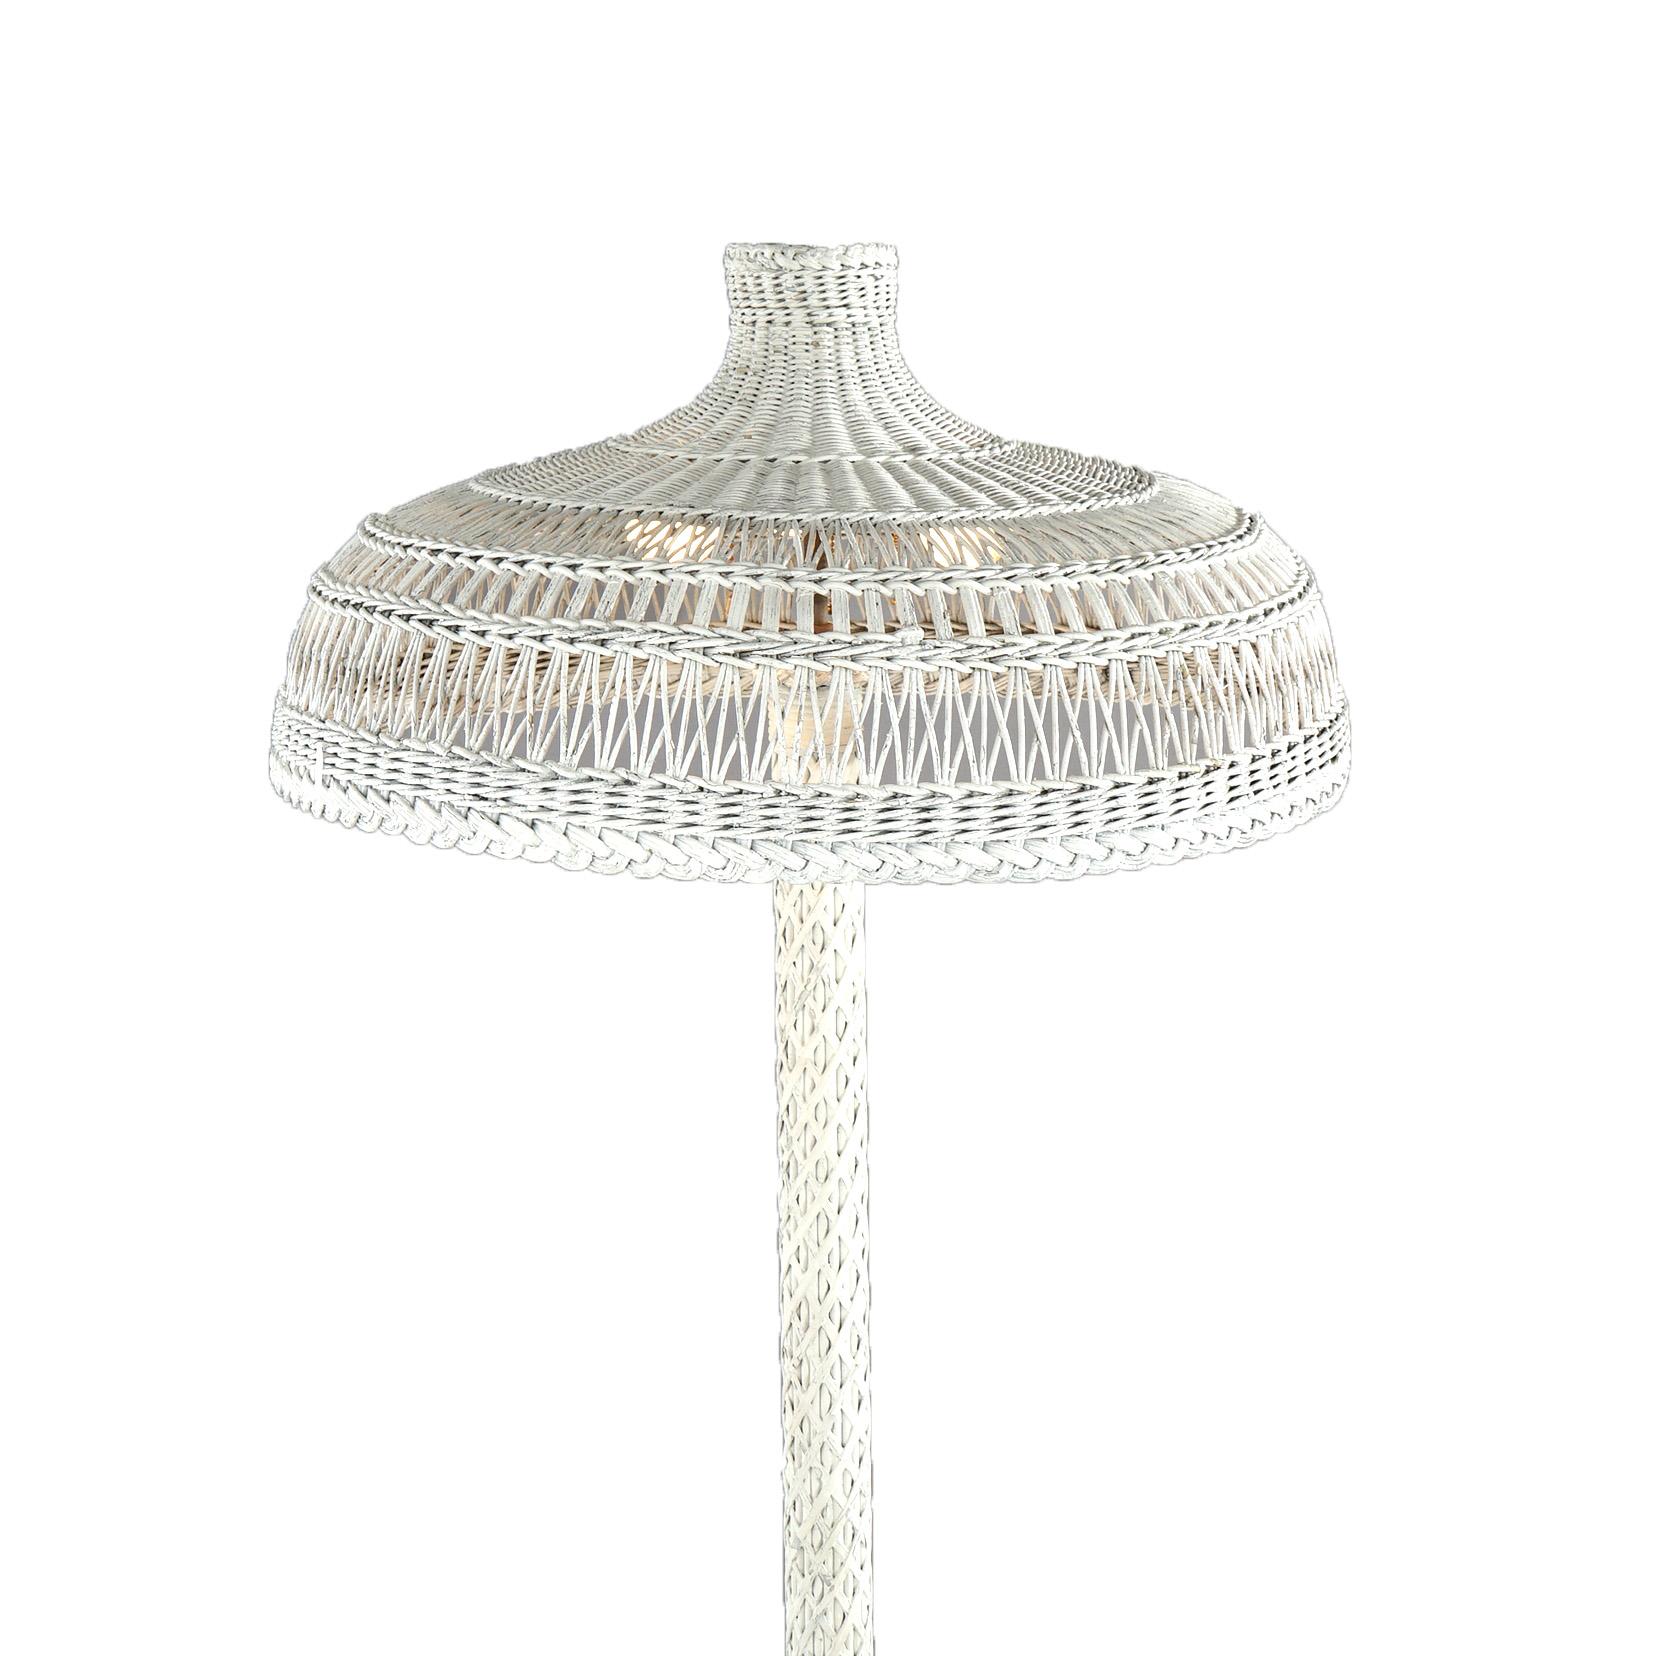 Antike Heywood Wakefield Wicker Dreifach-Leuchten-Stehlampe aus Korbweide, um 1920 (amerikanisch)